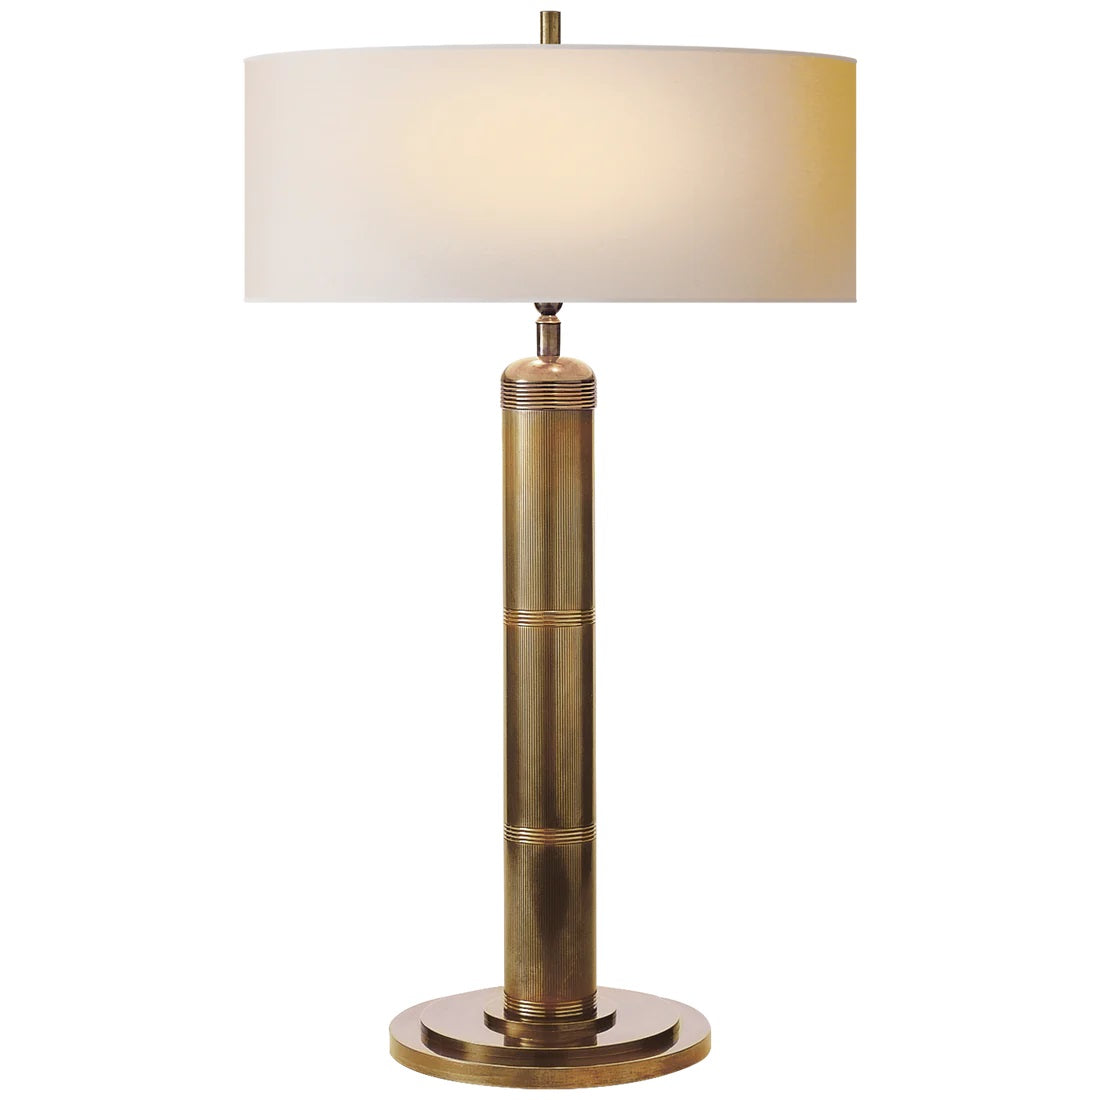 Longacre Table Lamp - Antique Brass